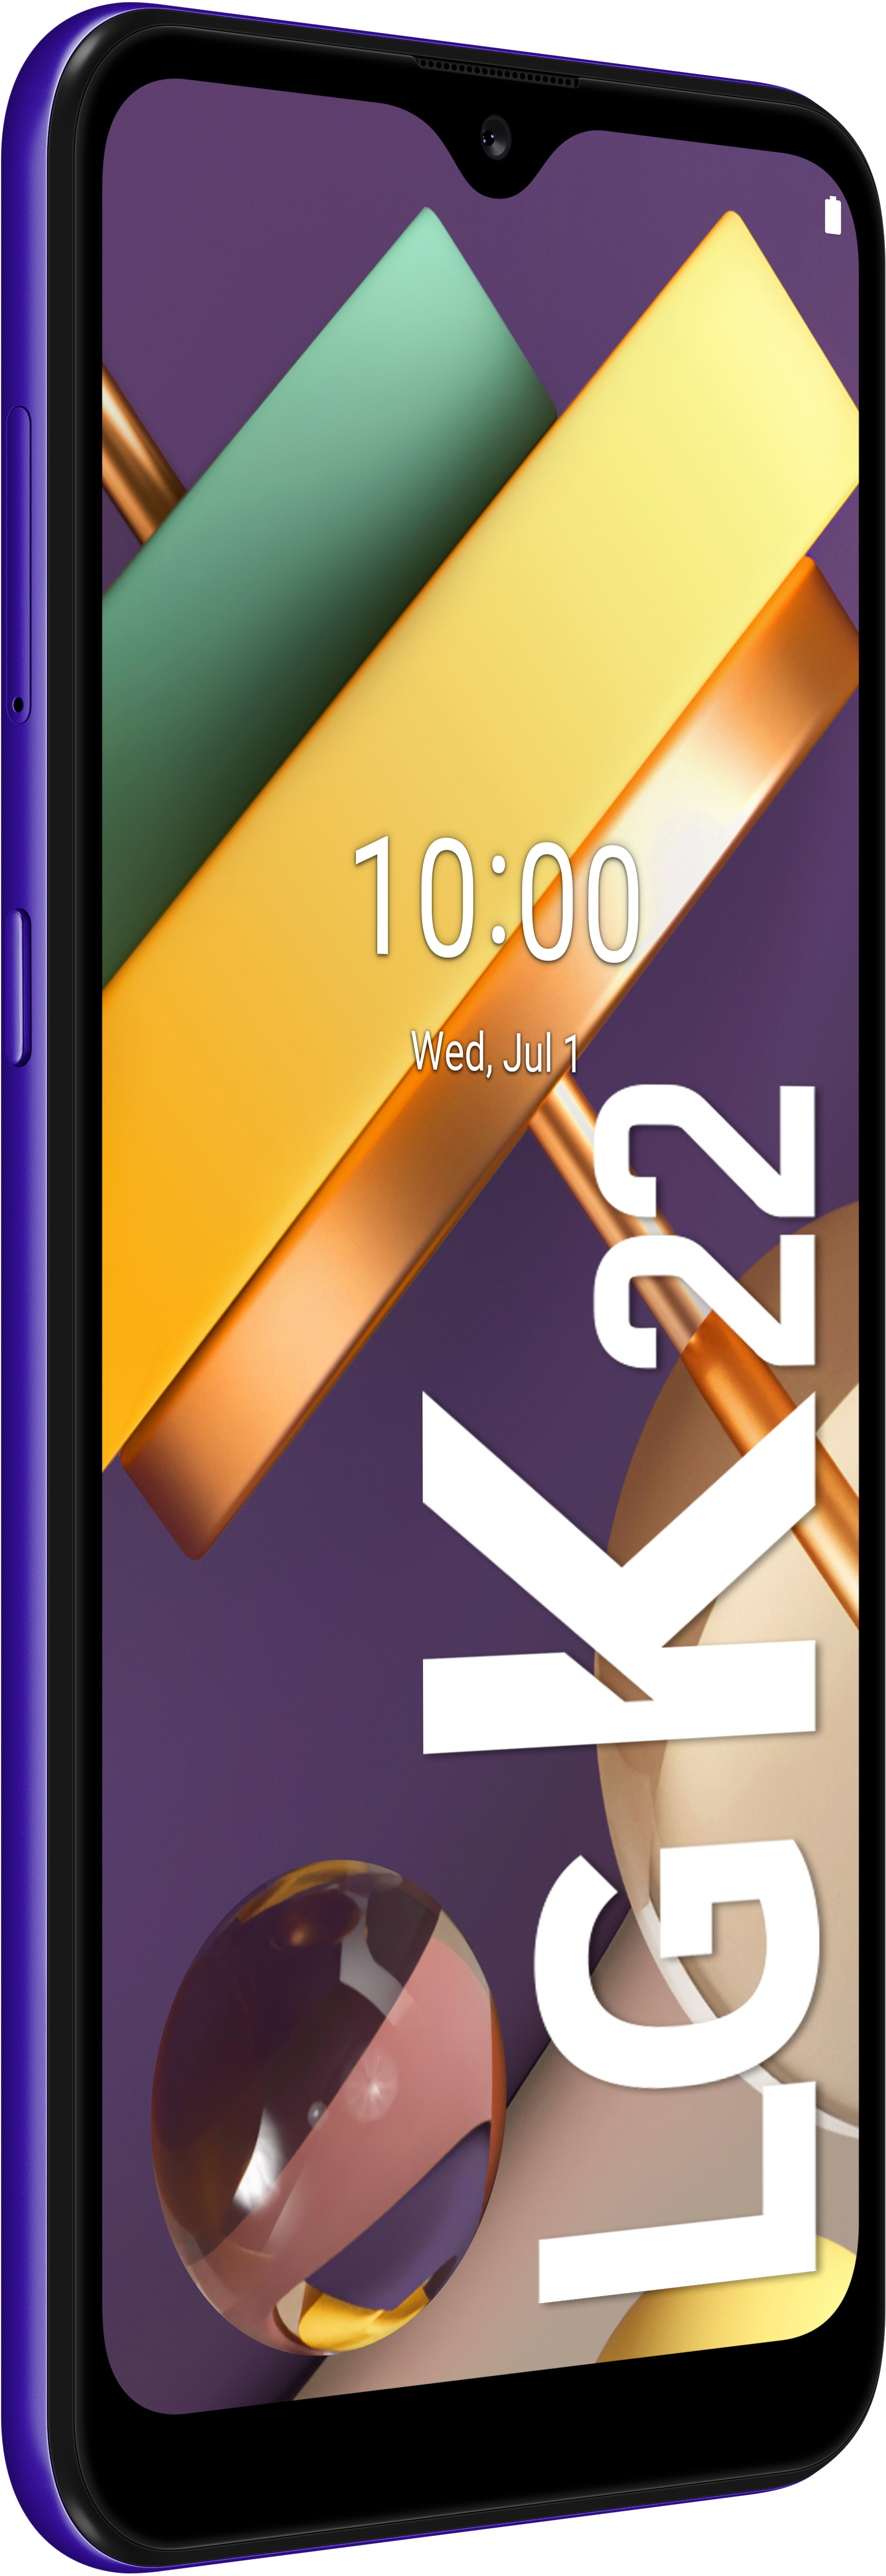 LG K22 32 SIM GB Blau Dual